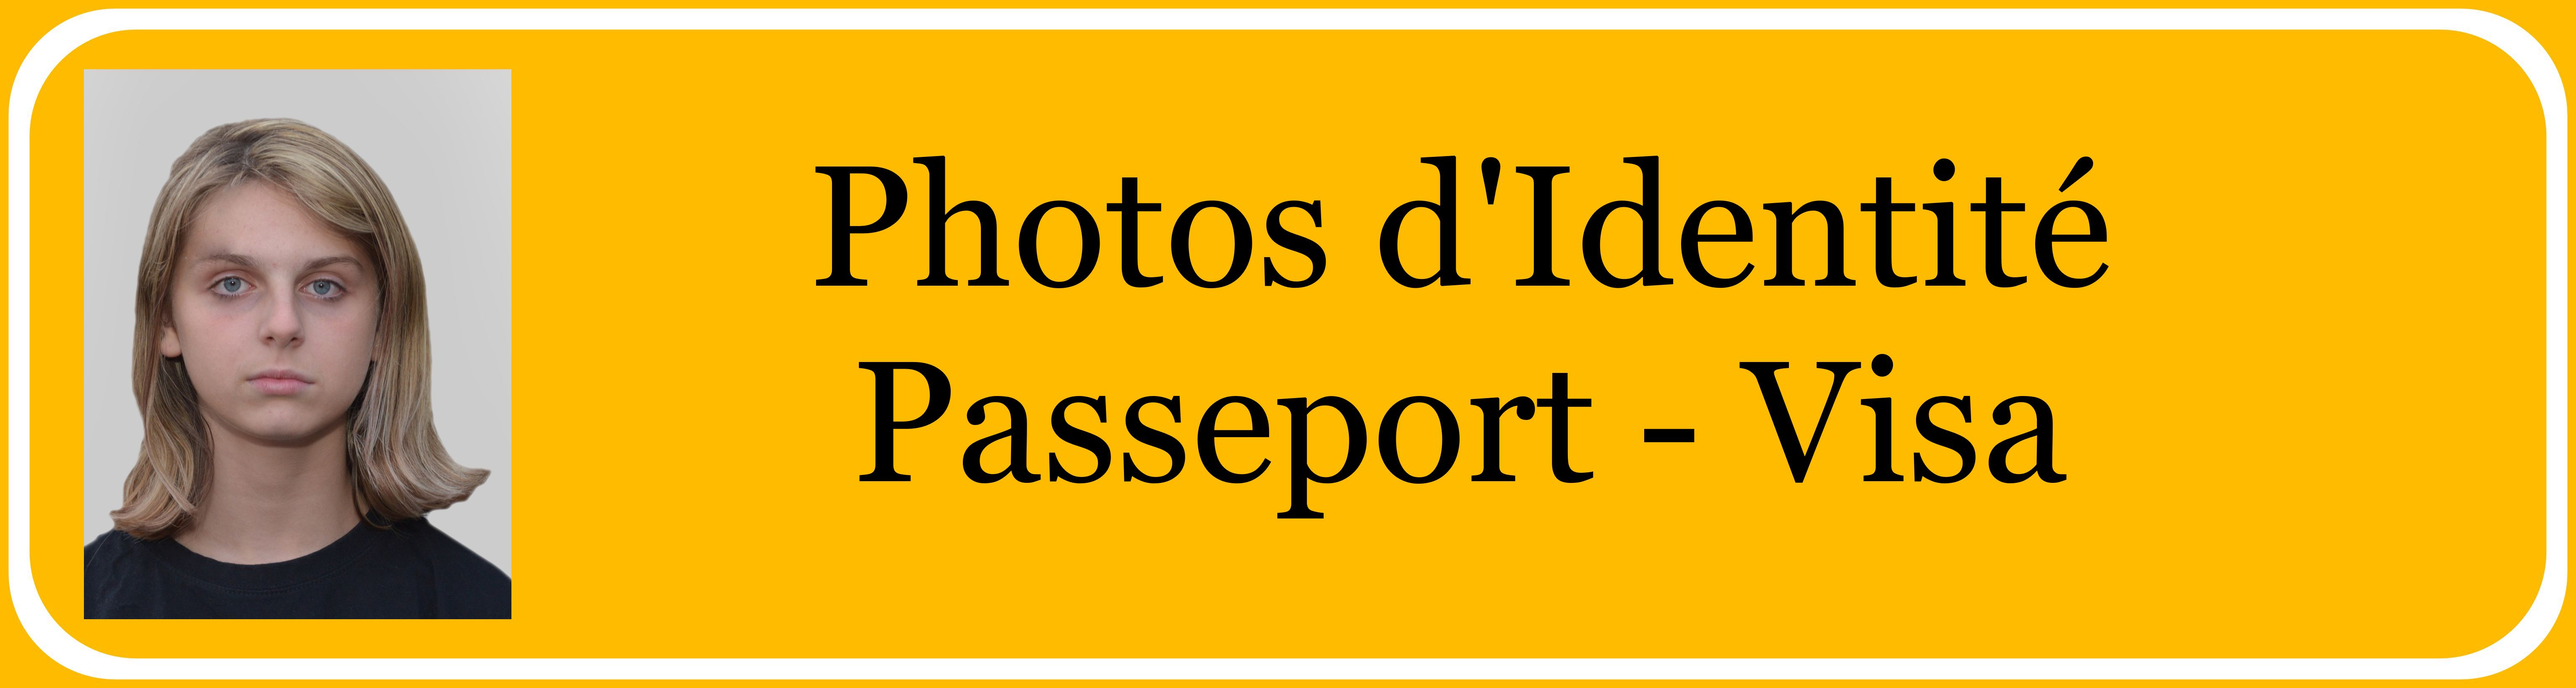 00 Passeport